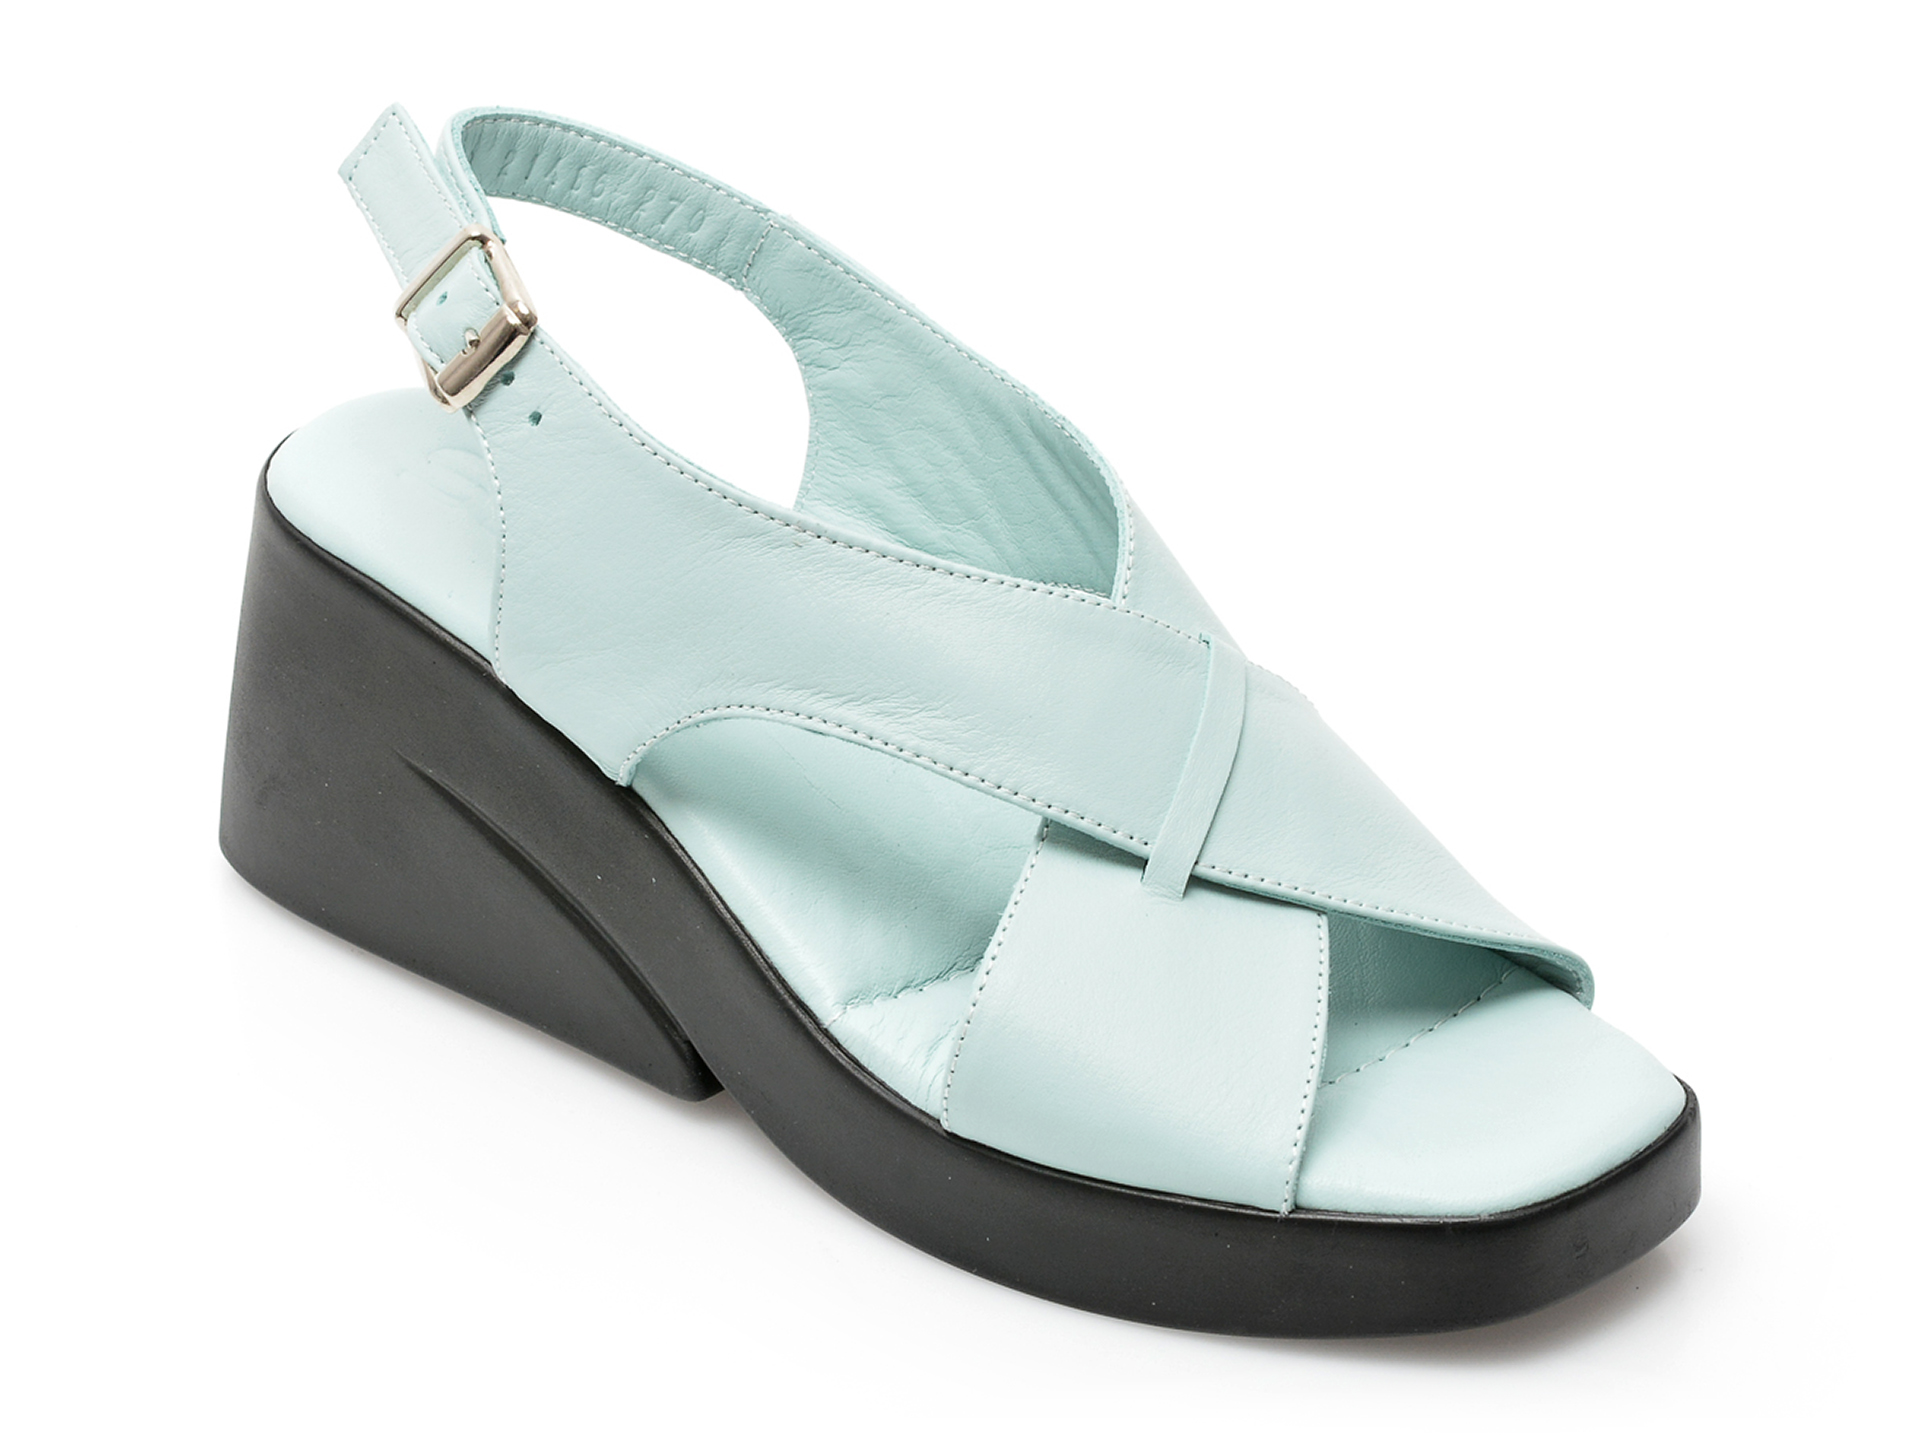 Sandale SM albastre, 2020, din piele naturala /femei/sandale